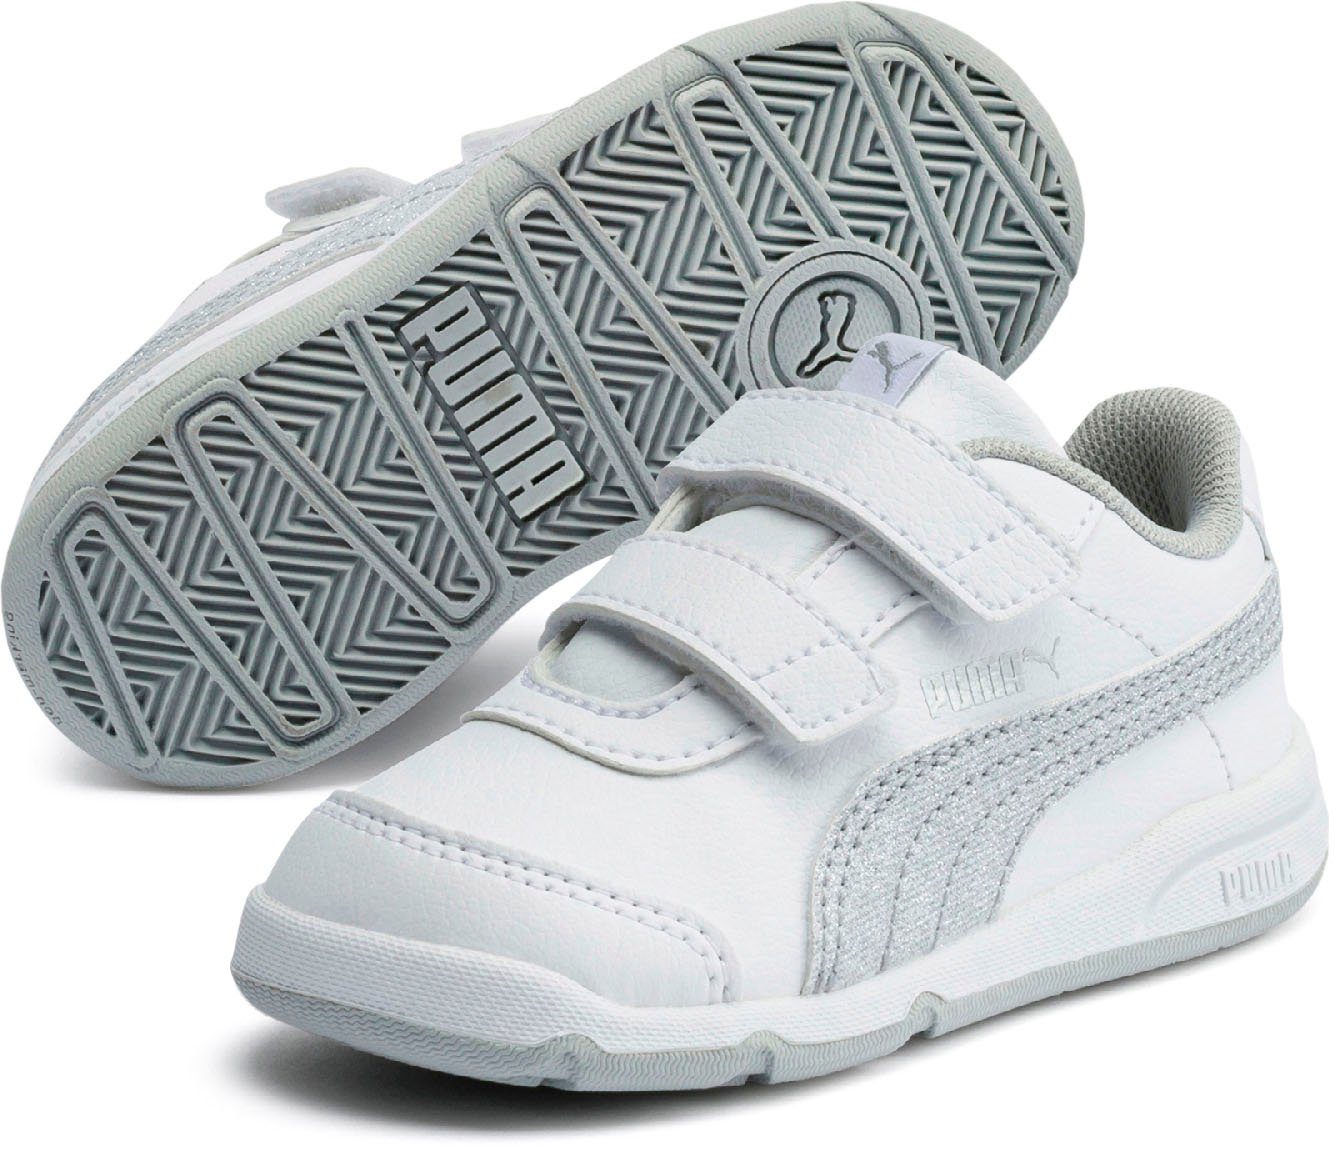 Schuhe Alle Sneaker PUMA Stepfleex 2 SL VE Glitz FS V Inf Sneaker